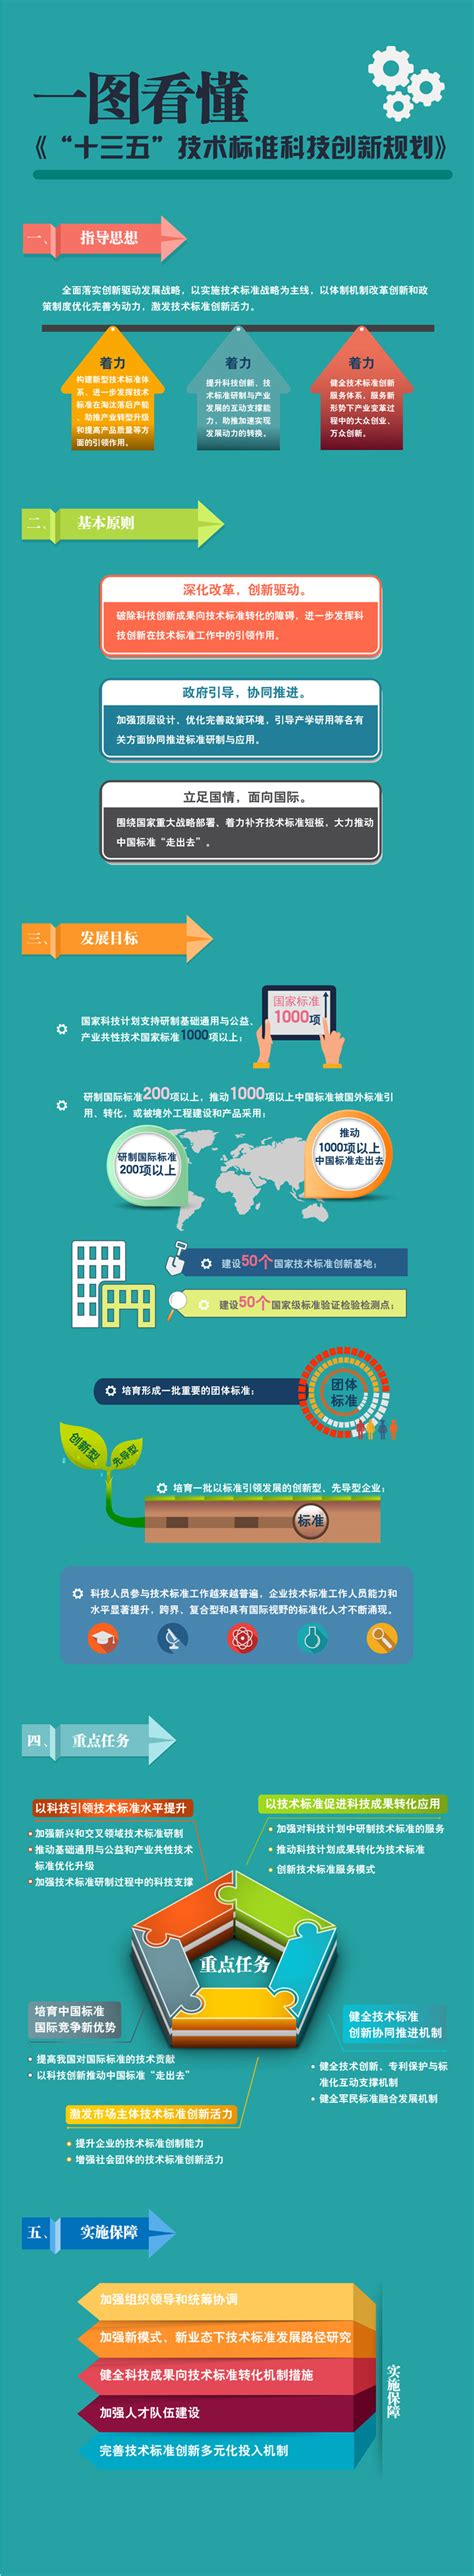 十张图带你了解中国500强企业和中央企业科技创新现状 “十四五”将把科技创新作为头号任务_行业研究报告 - 前瞻网